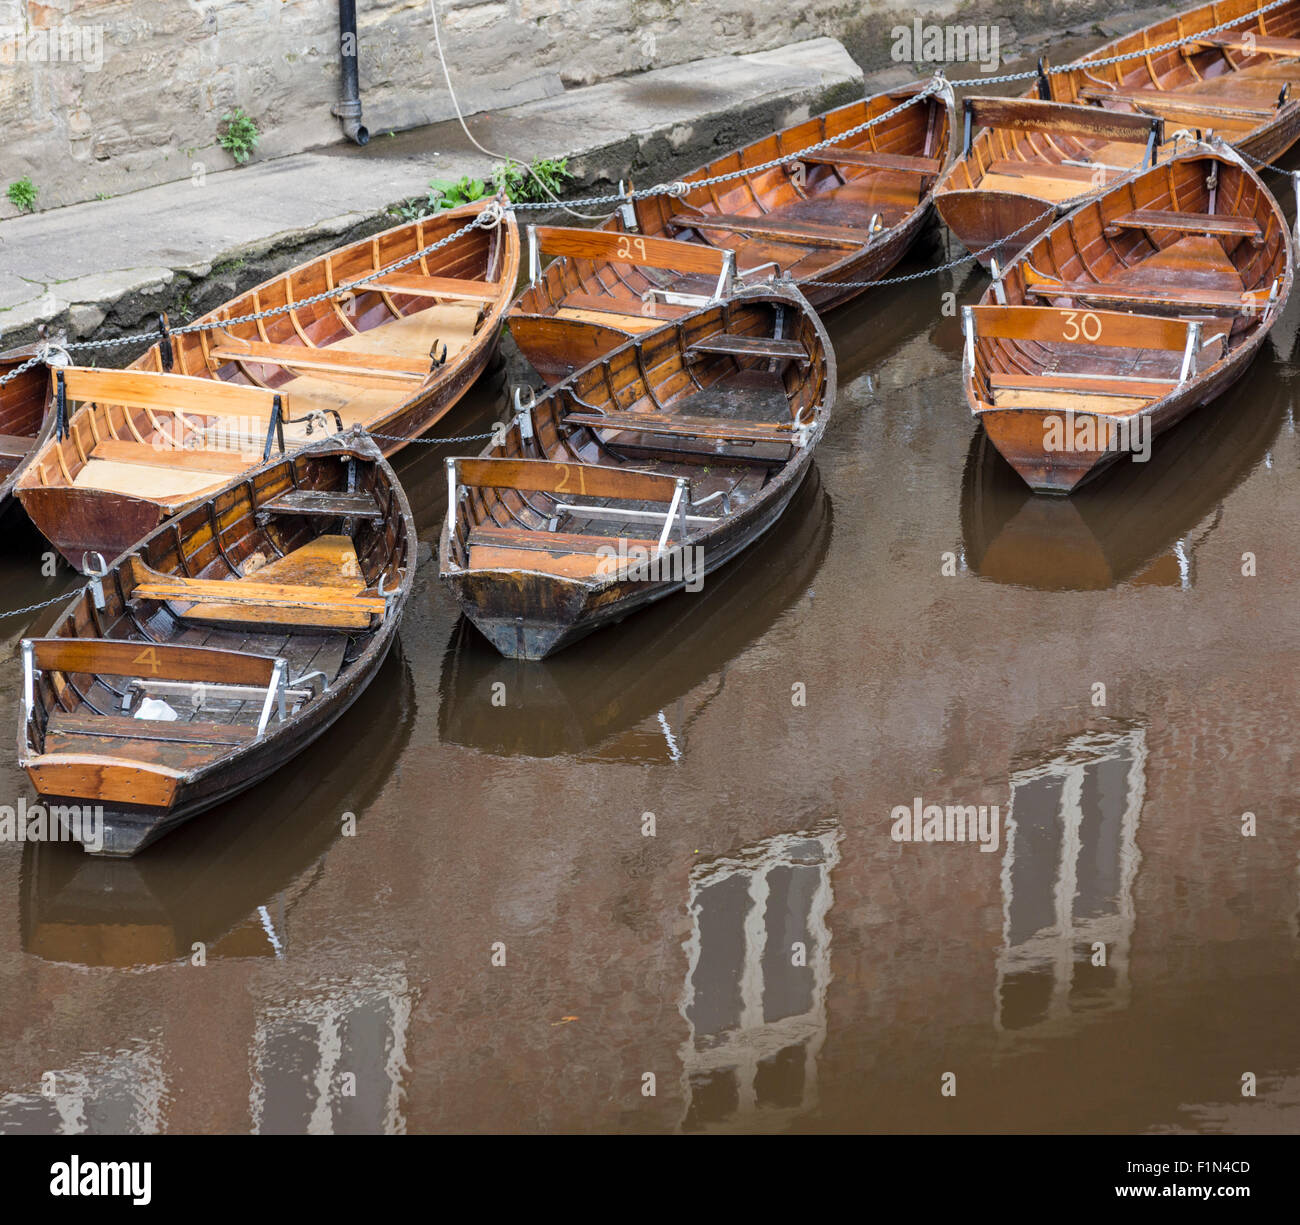 Location de bateaux à rames dans la rivière Wear, Durham, England, UK. Vue depuis Leazes Road bridge avec des capacités Banque D'Images